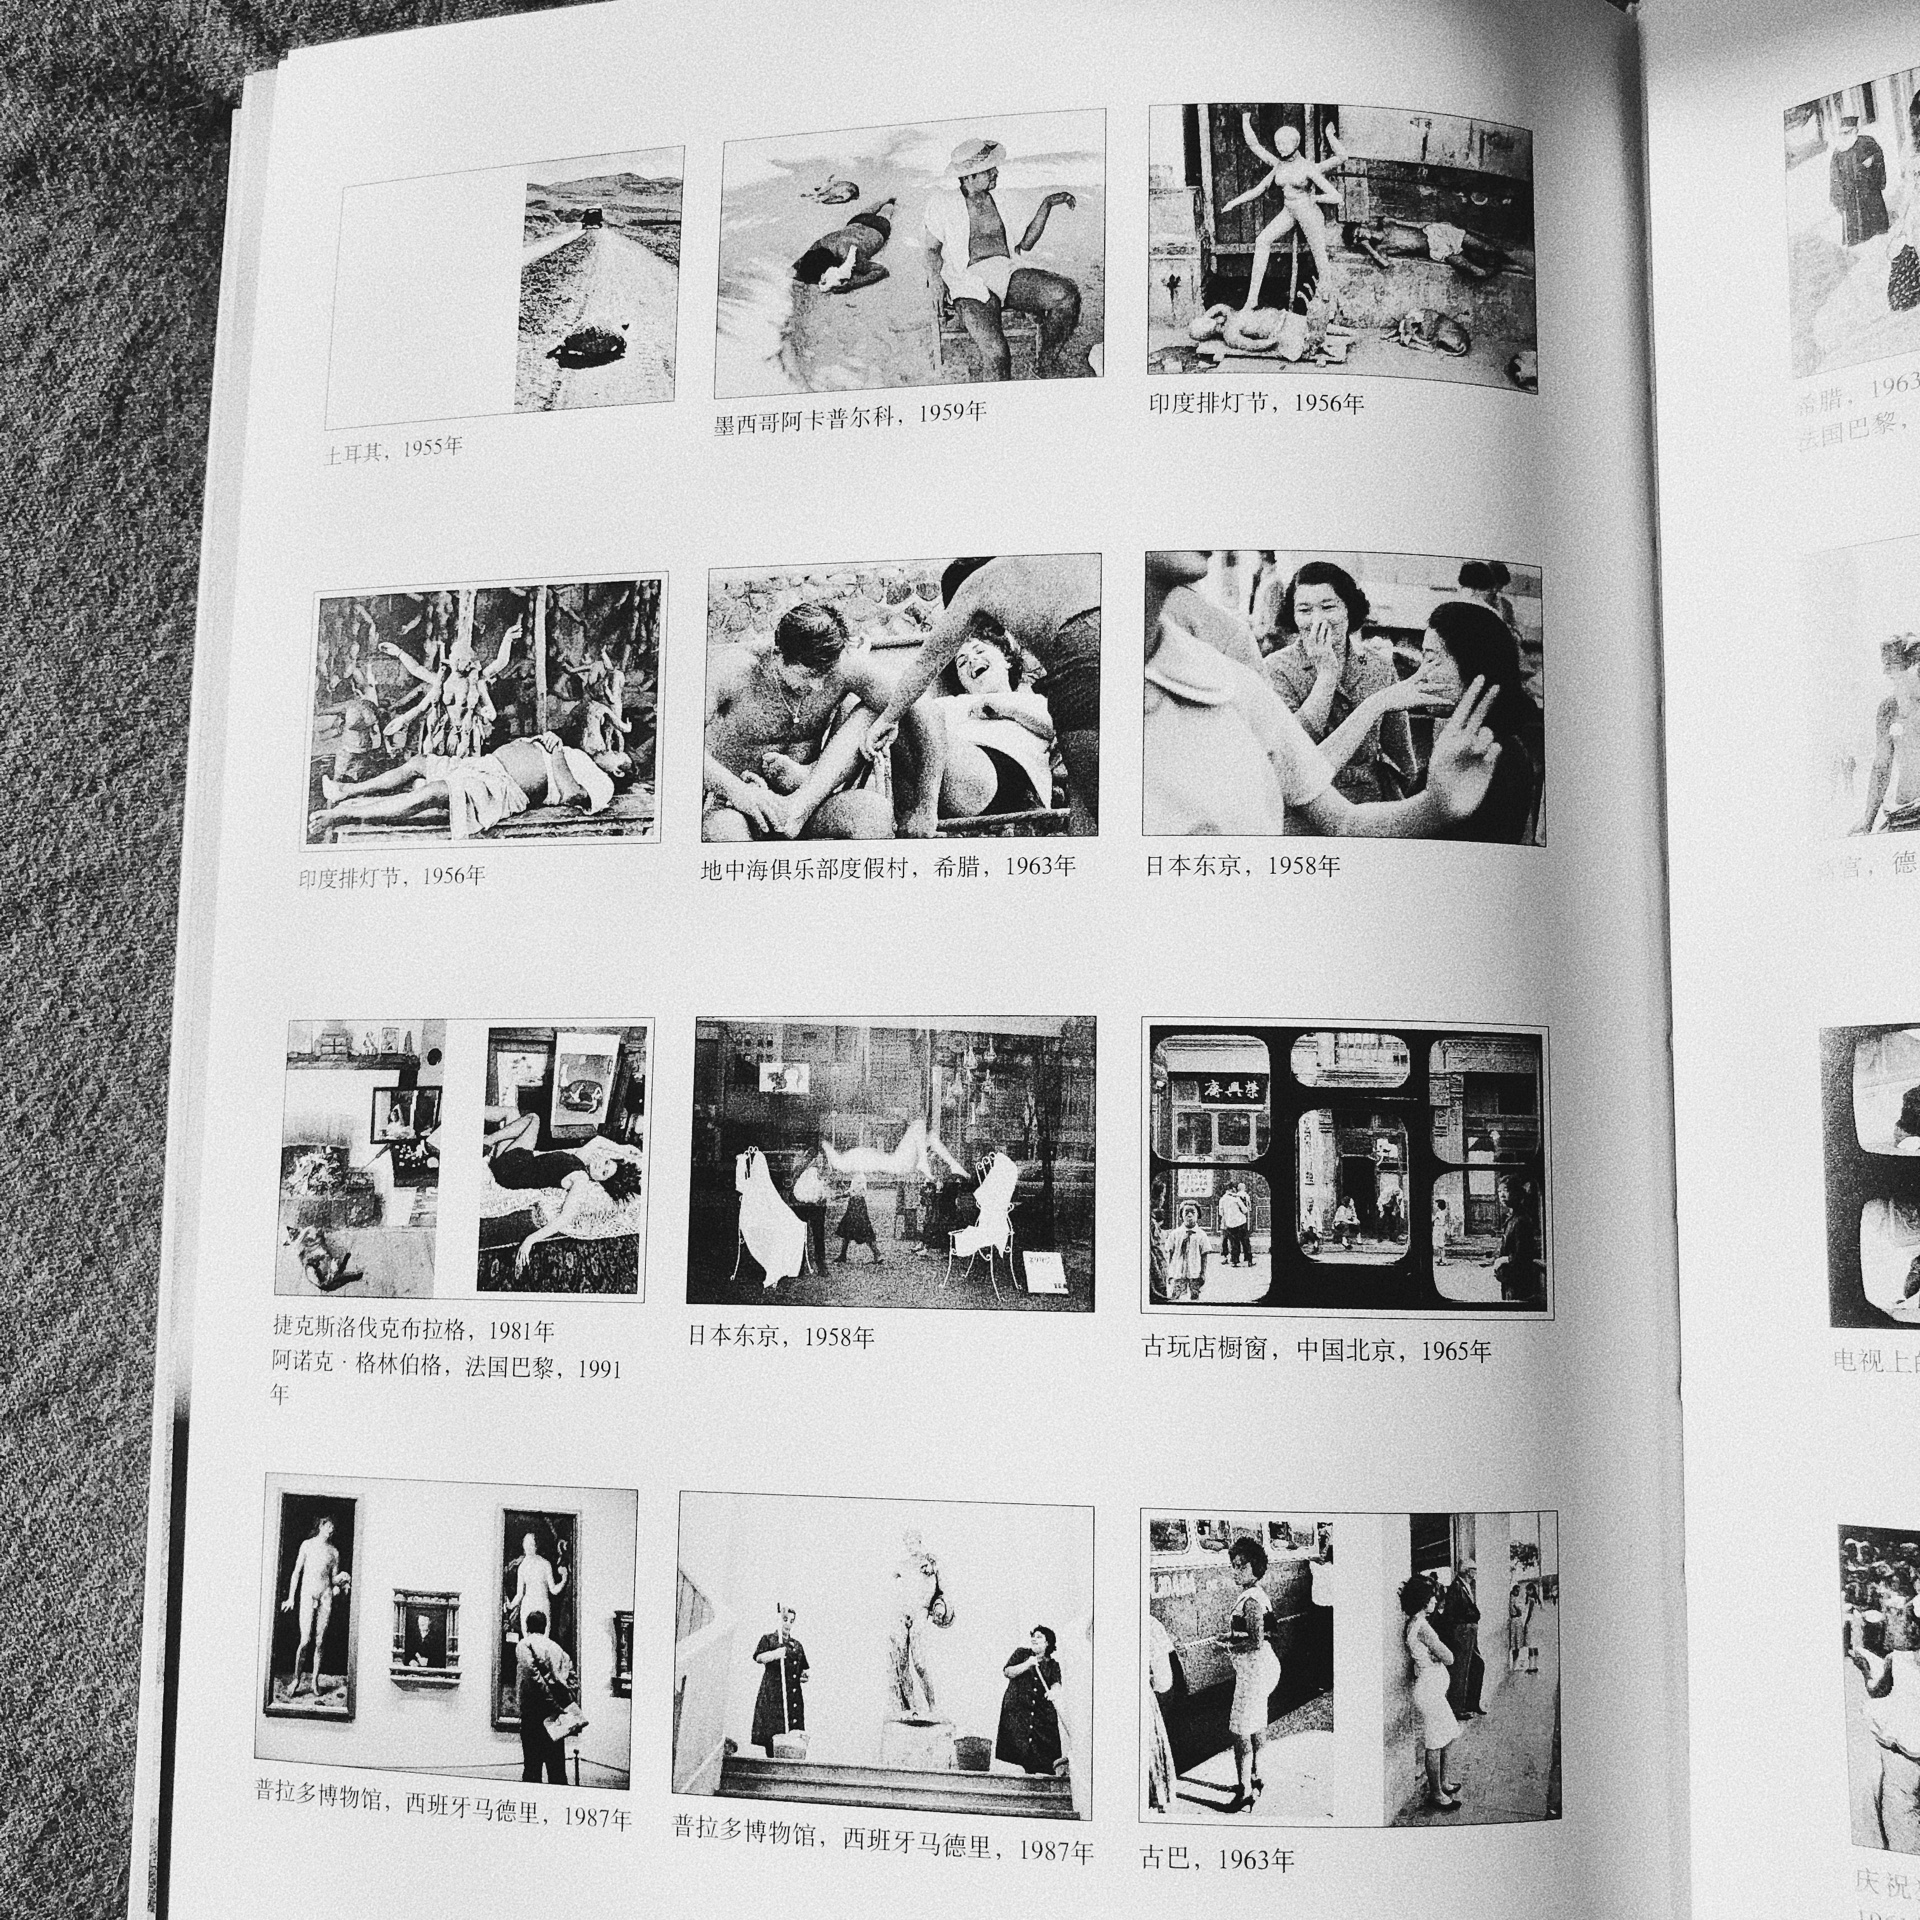 马格南摄影大师 马克吕布作品到访中国20余次。影响一代中国纪实摄影50年经典作品全面回顾 欣赏学**师印刷较为清晰 无文字 纯图片影集 感受照片的力量活动图书满199-100还比较合适，屯了一批书。